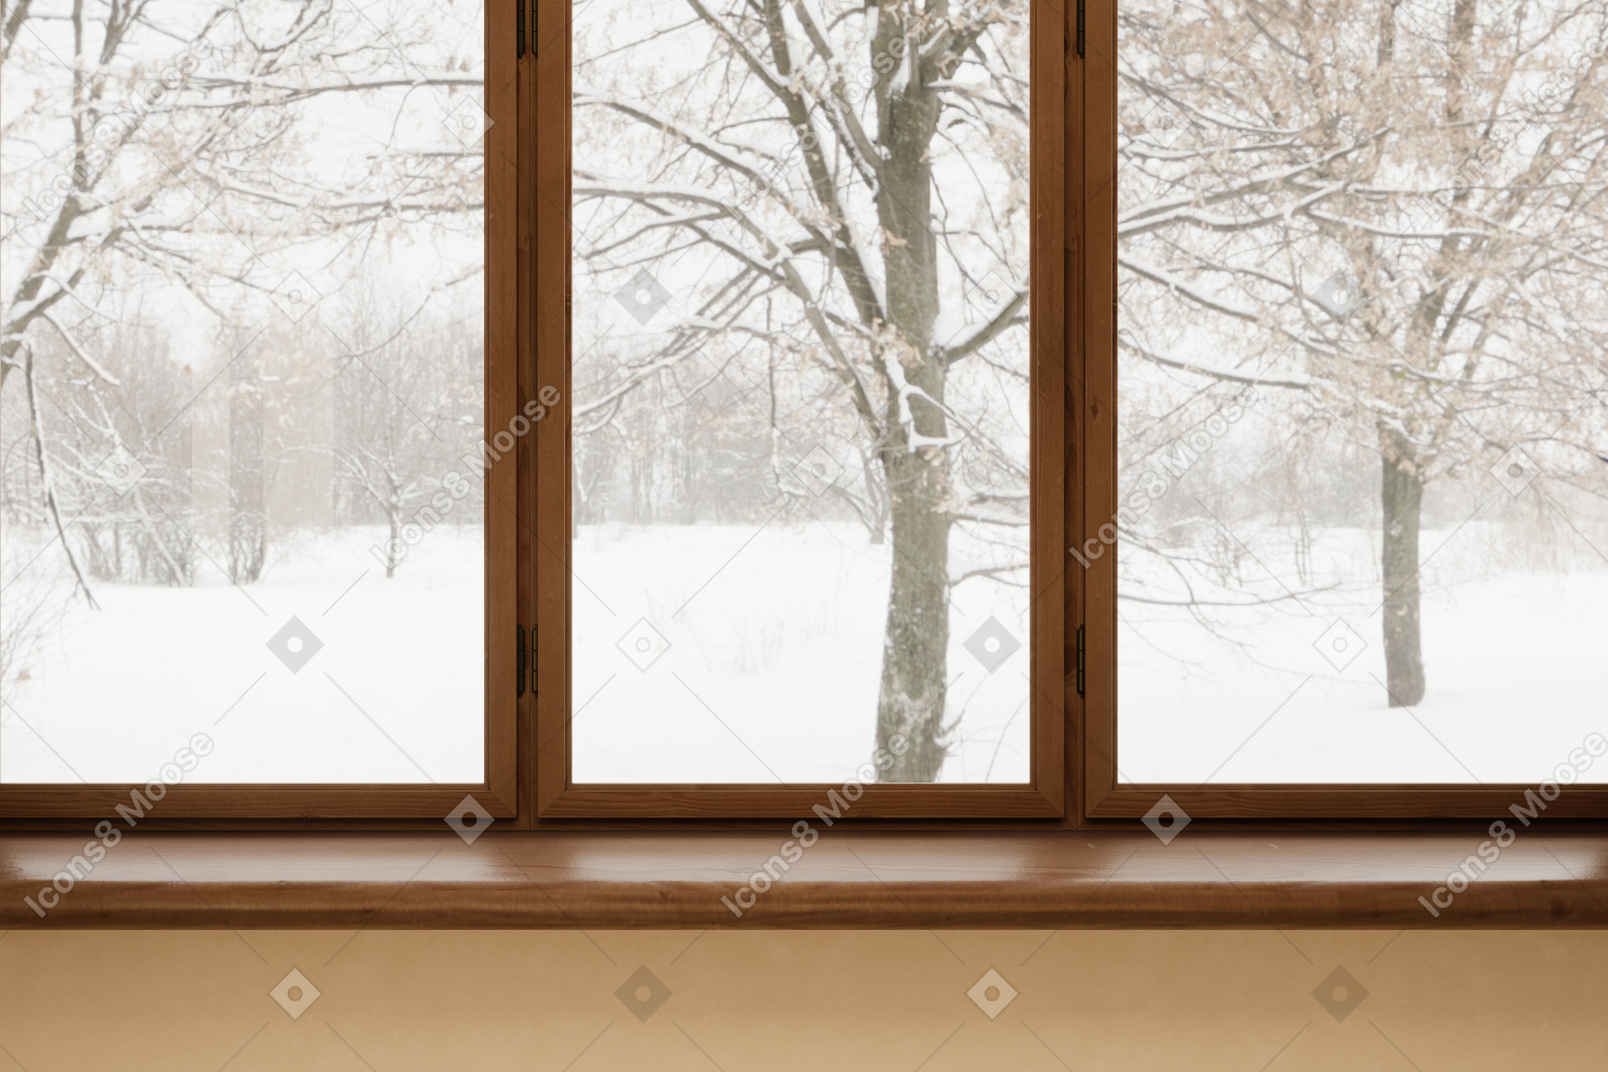 Fenêtre avec paysage enneigé à l'extérieur